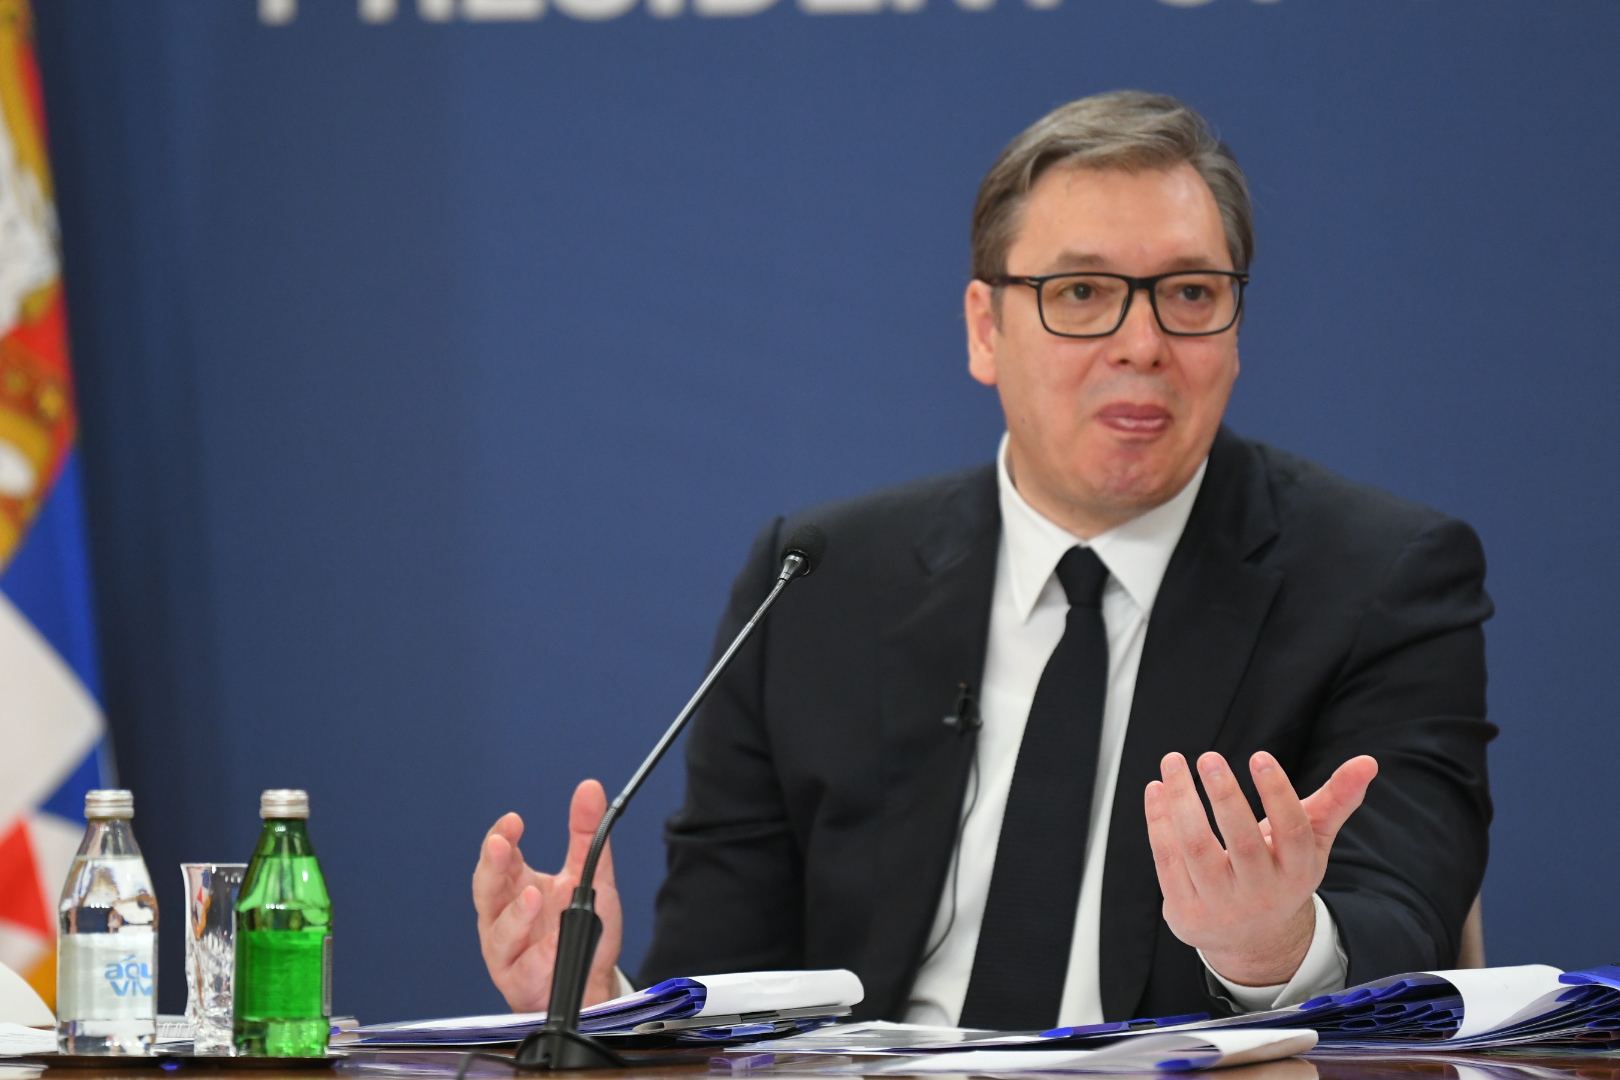 Aleksandar Vucic obracanje naciji u Predsednistvu Srbije